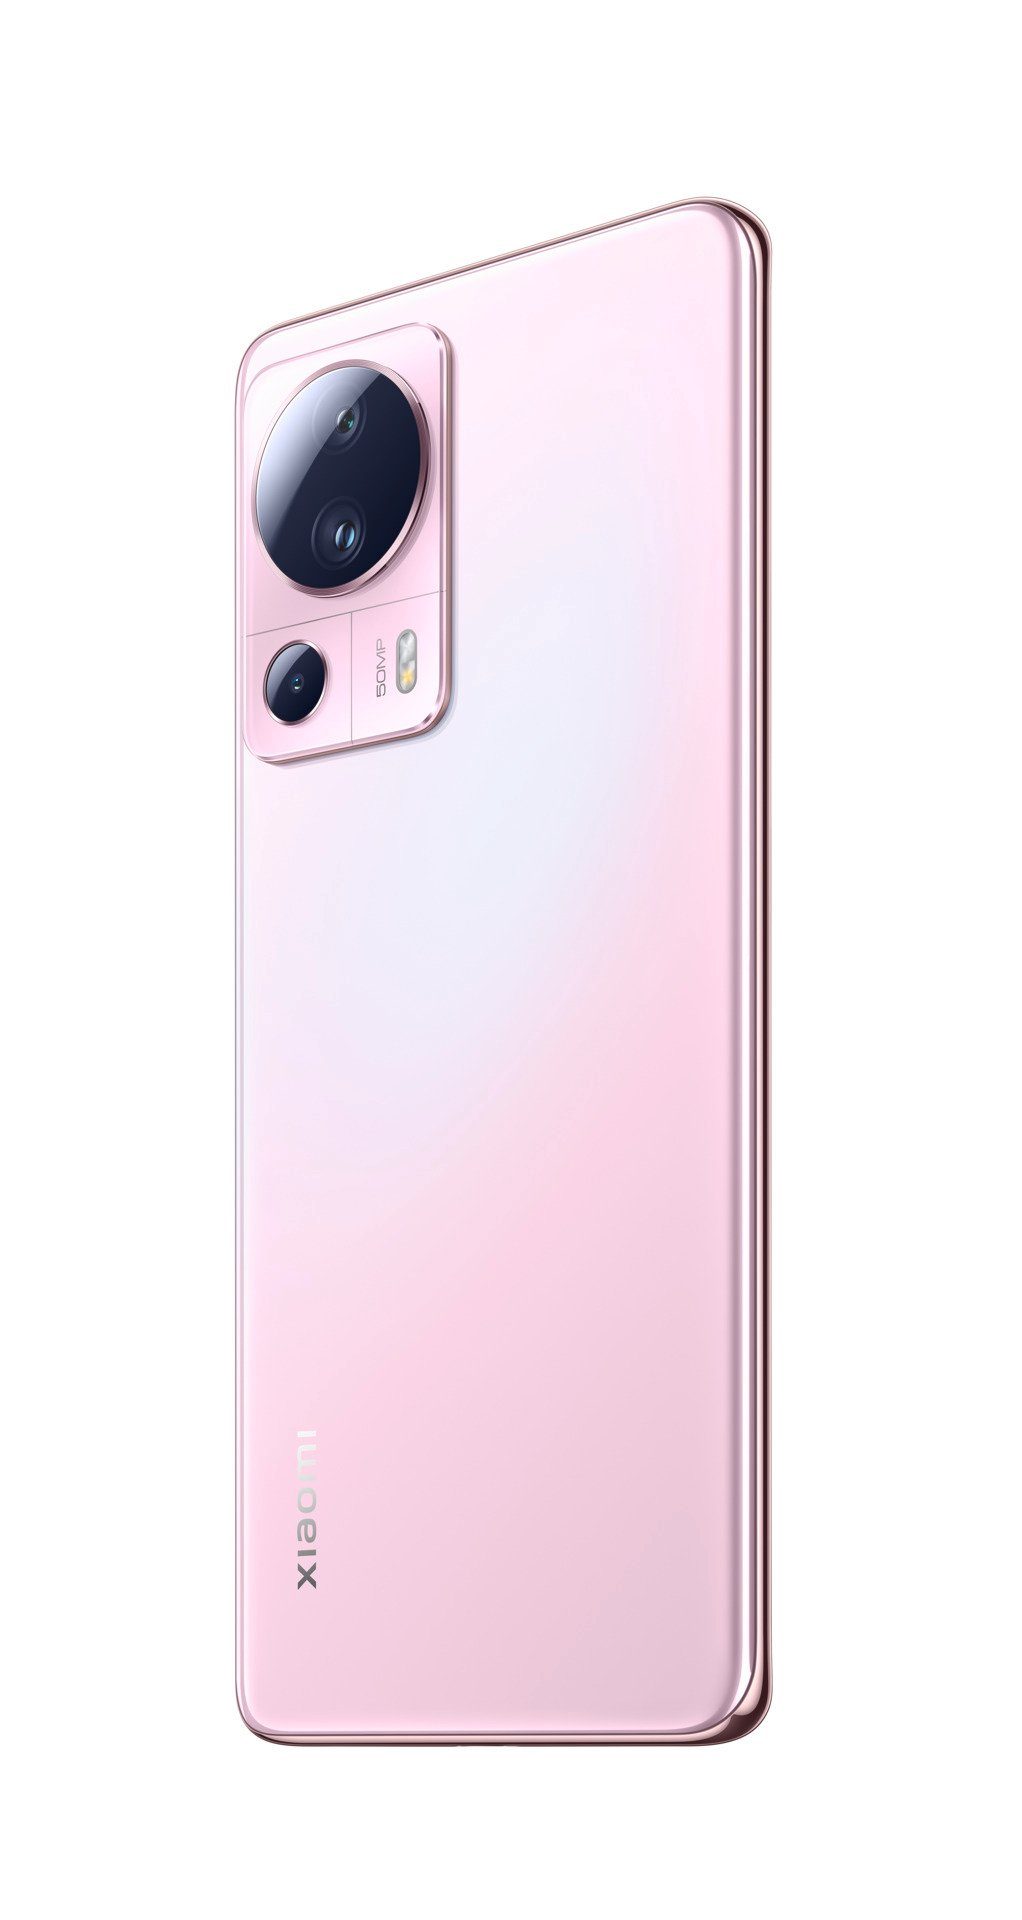 Xiaomi 13 Lite Speicherplatz, 128 Kamera) 50 cm/6,55 (16,65 Pink 8GB+128GB GB Smartphone Zoll, MP